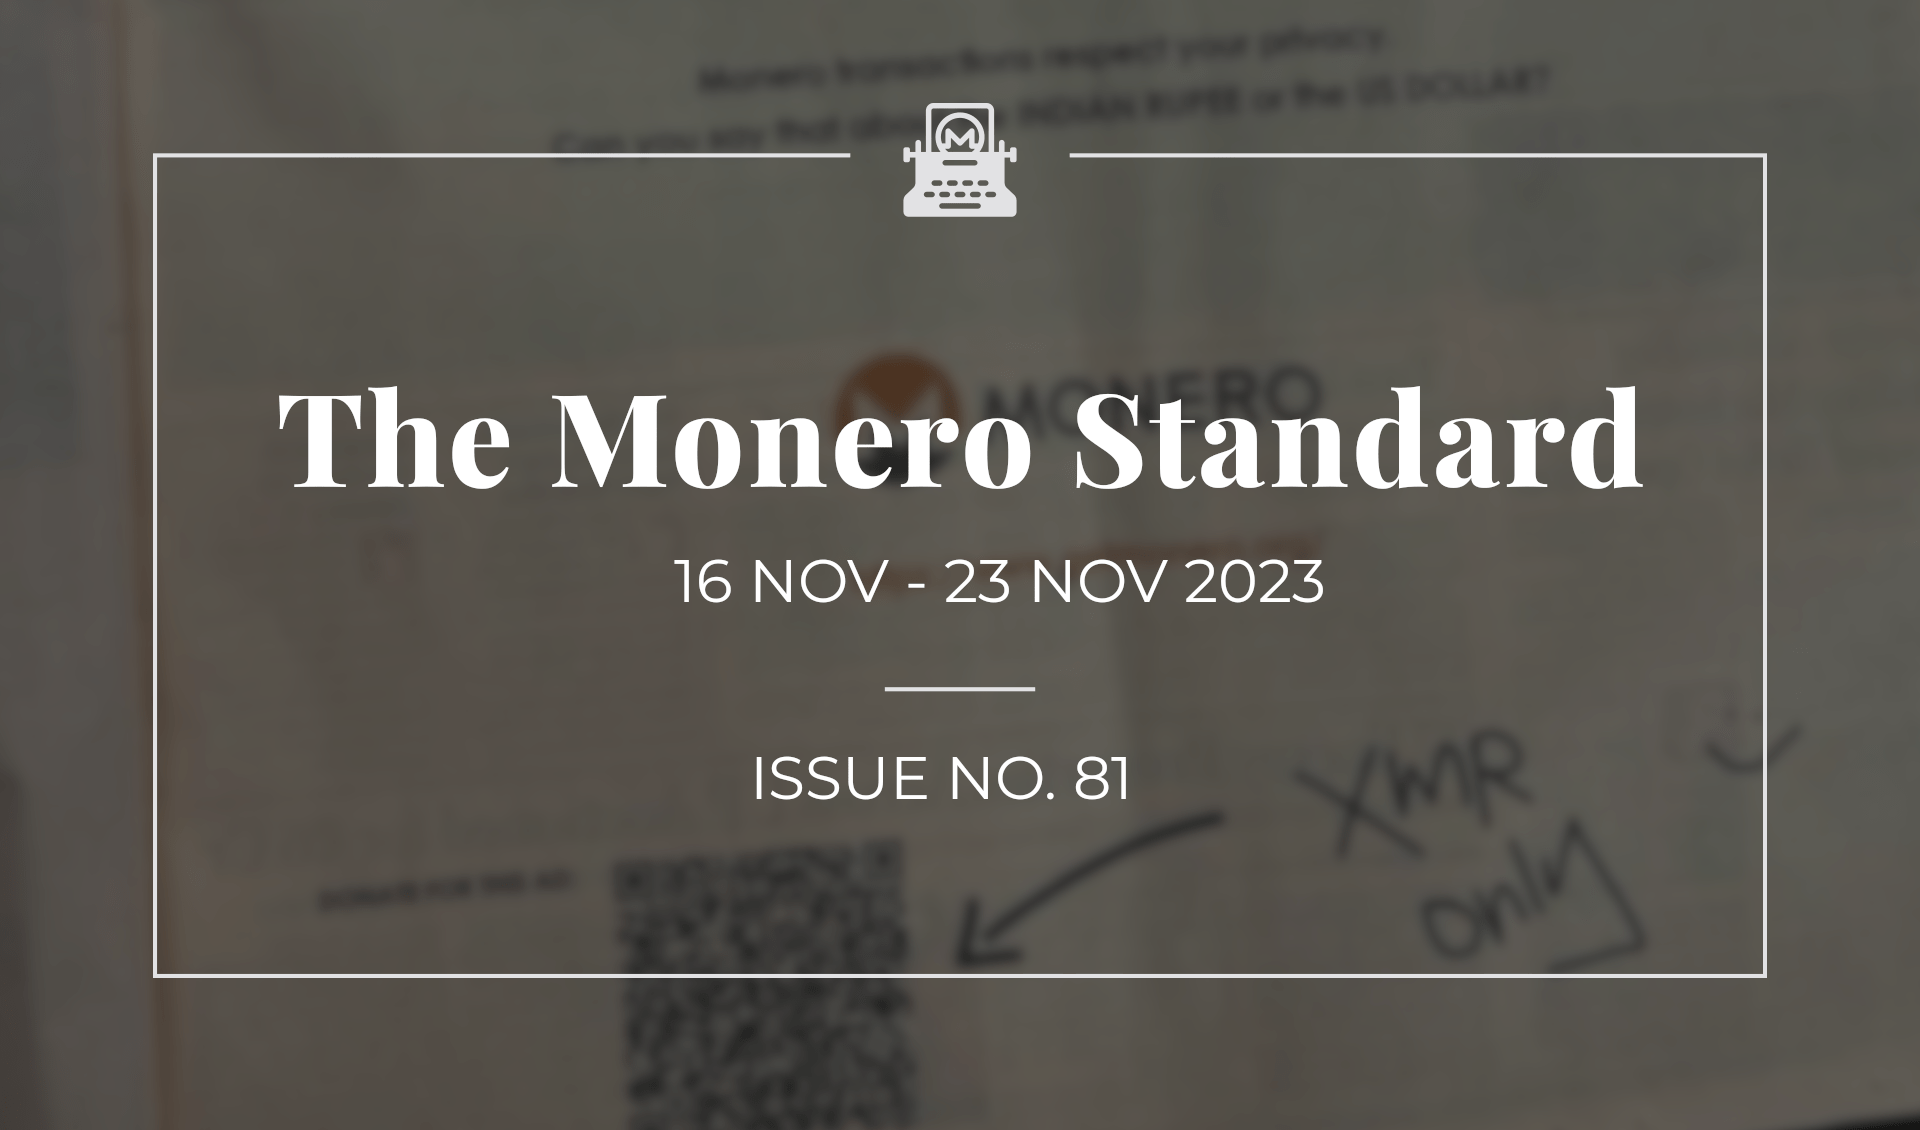 The Monero Standard #81: 16 Nov 2023 - 23 Nov 2023